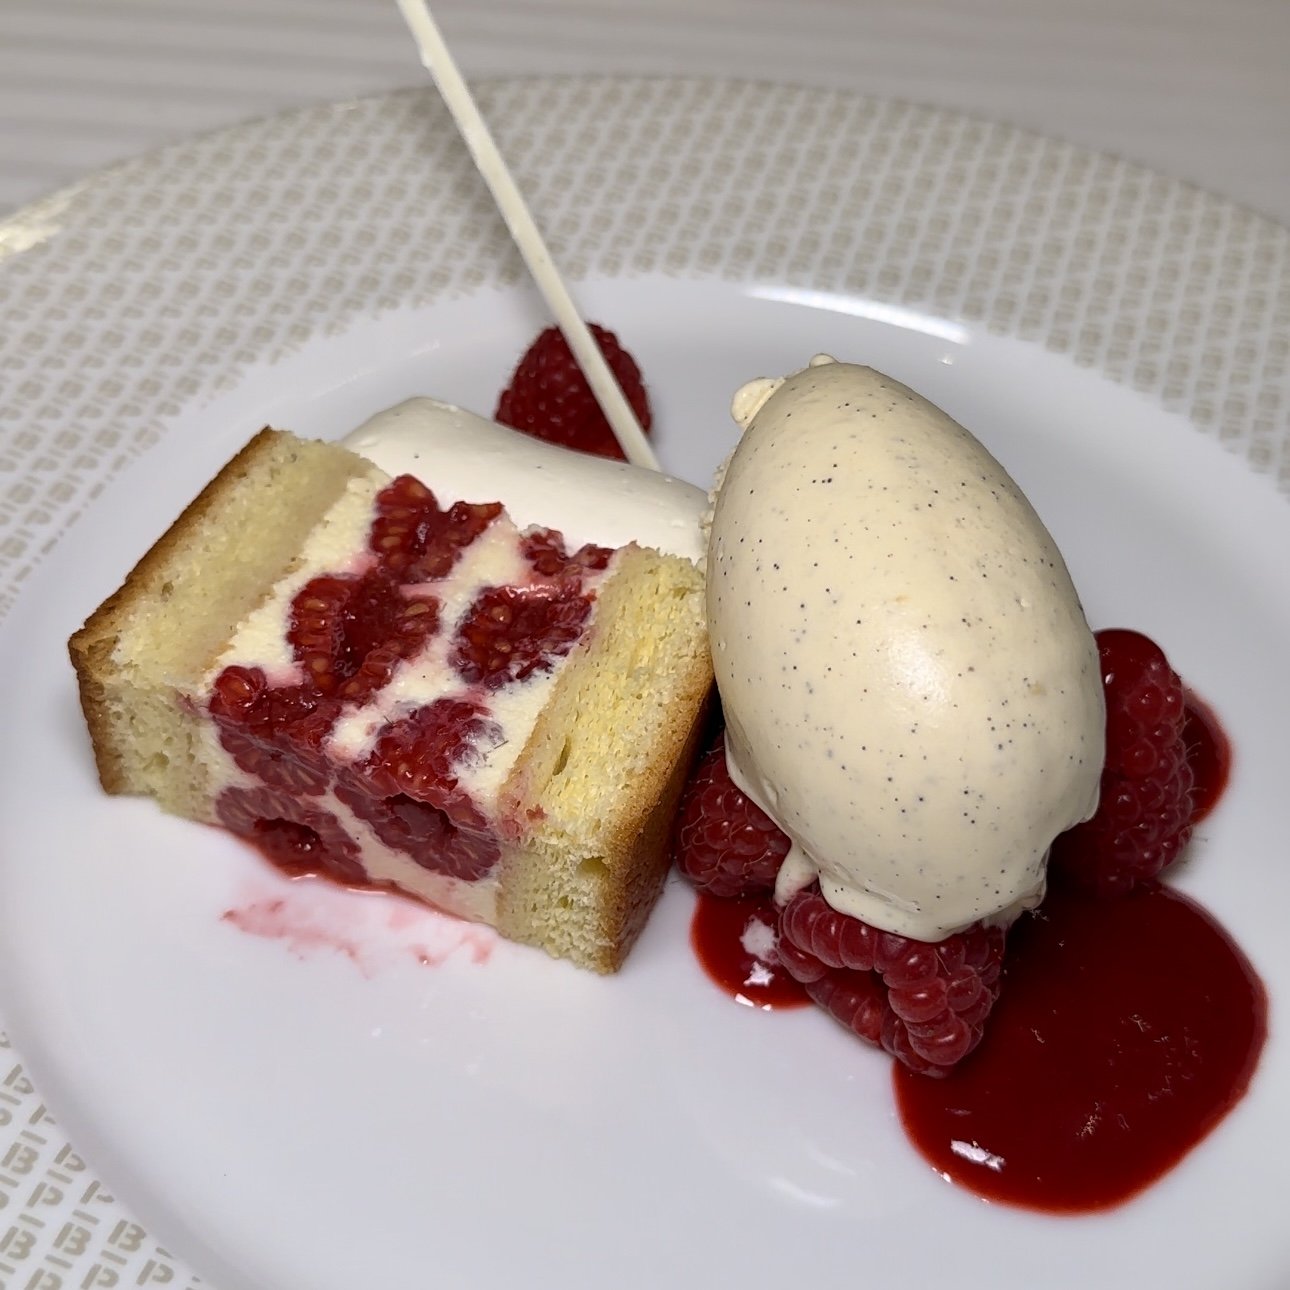 Raspberry Cake with Vanilla Ice Cream